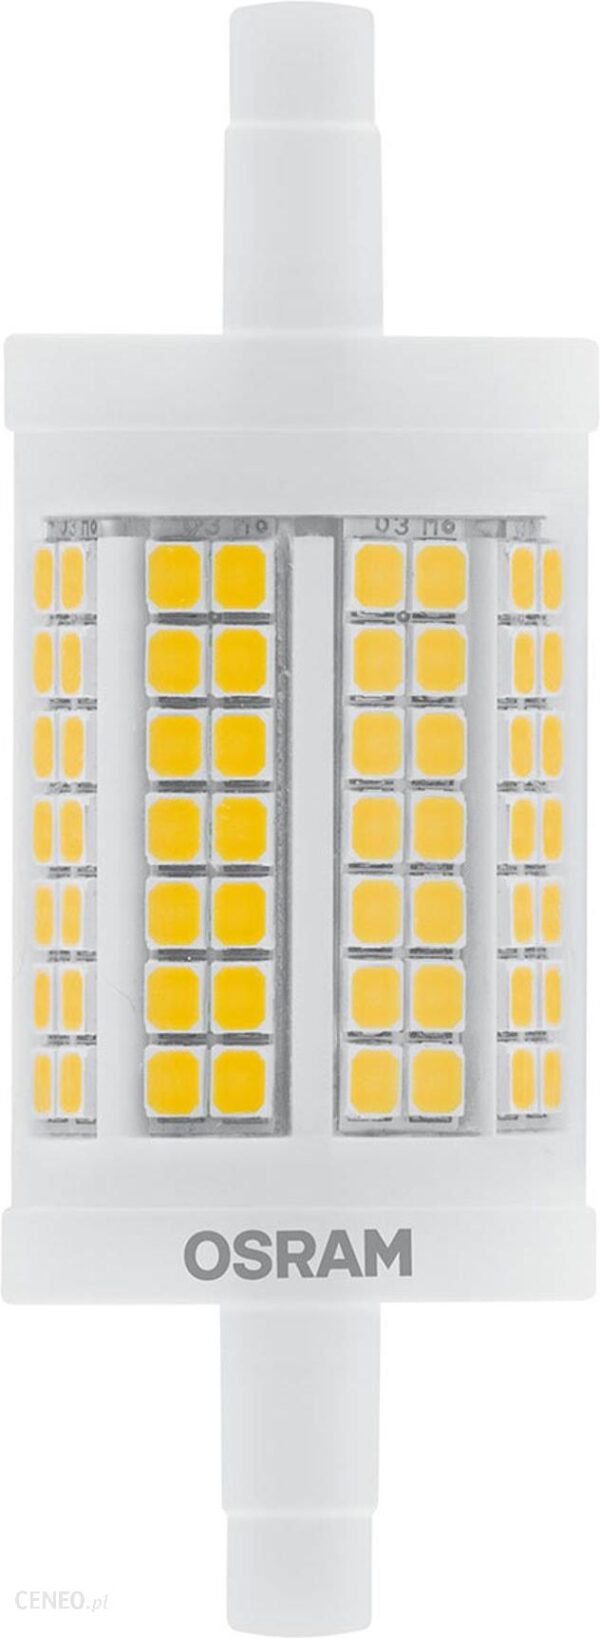 Osram żarówka prętowa LED R7s 11,5W 7,8cm 827